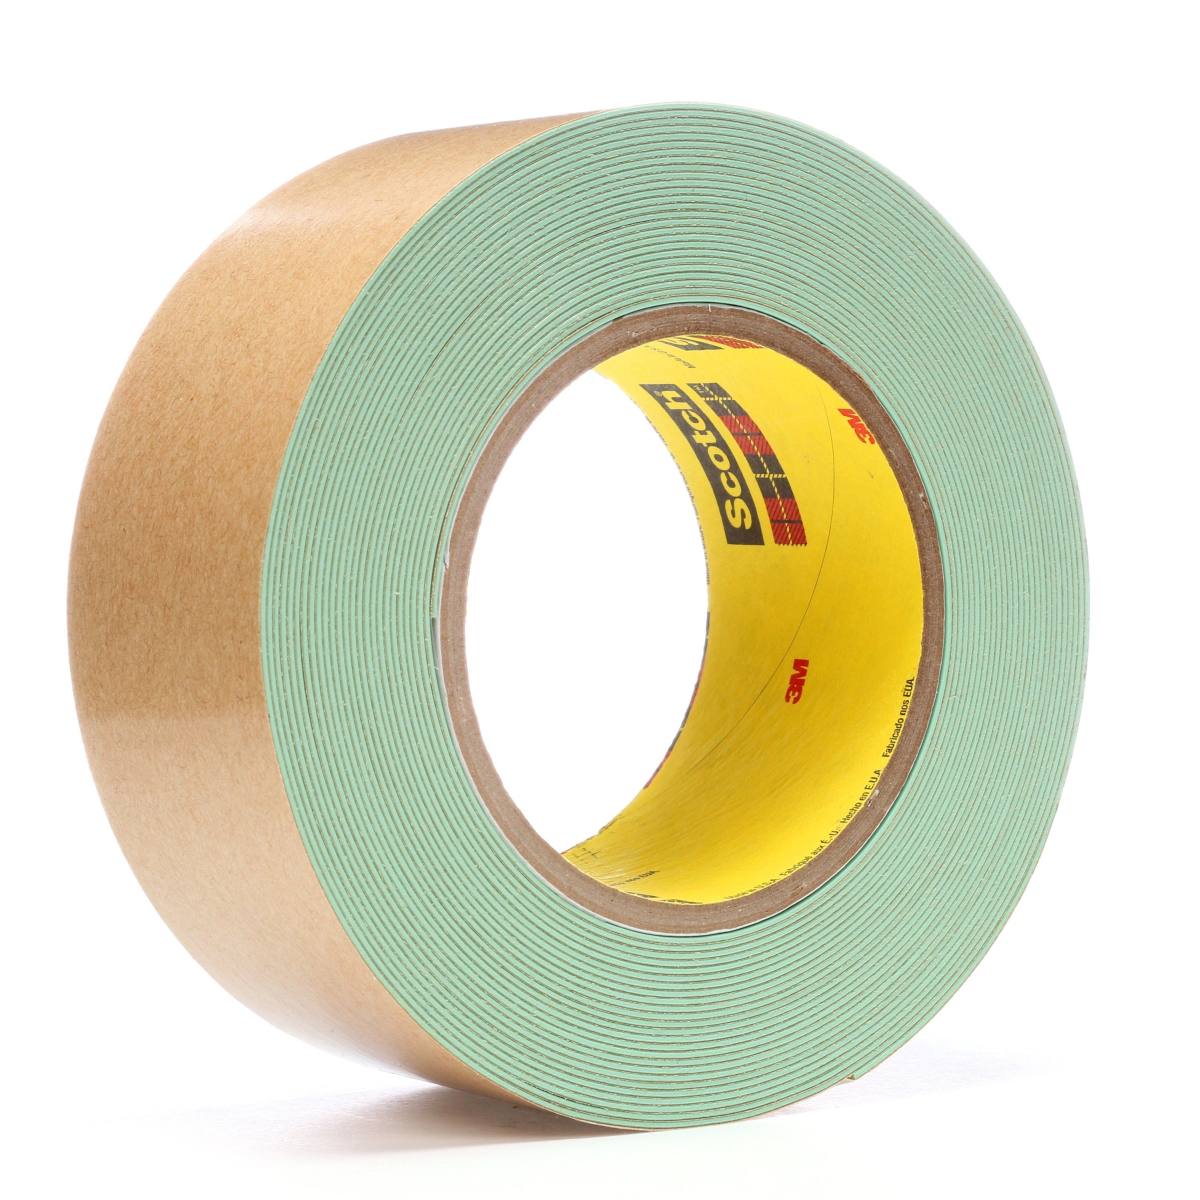 3M Scotch sandblasting tape 500, green, 25 mm x 9.10 m, 0.91 mm